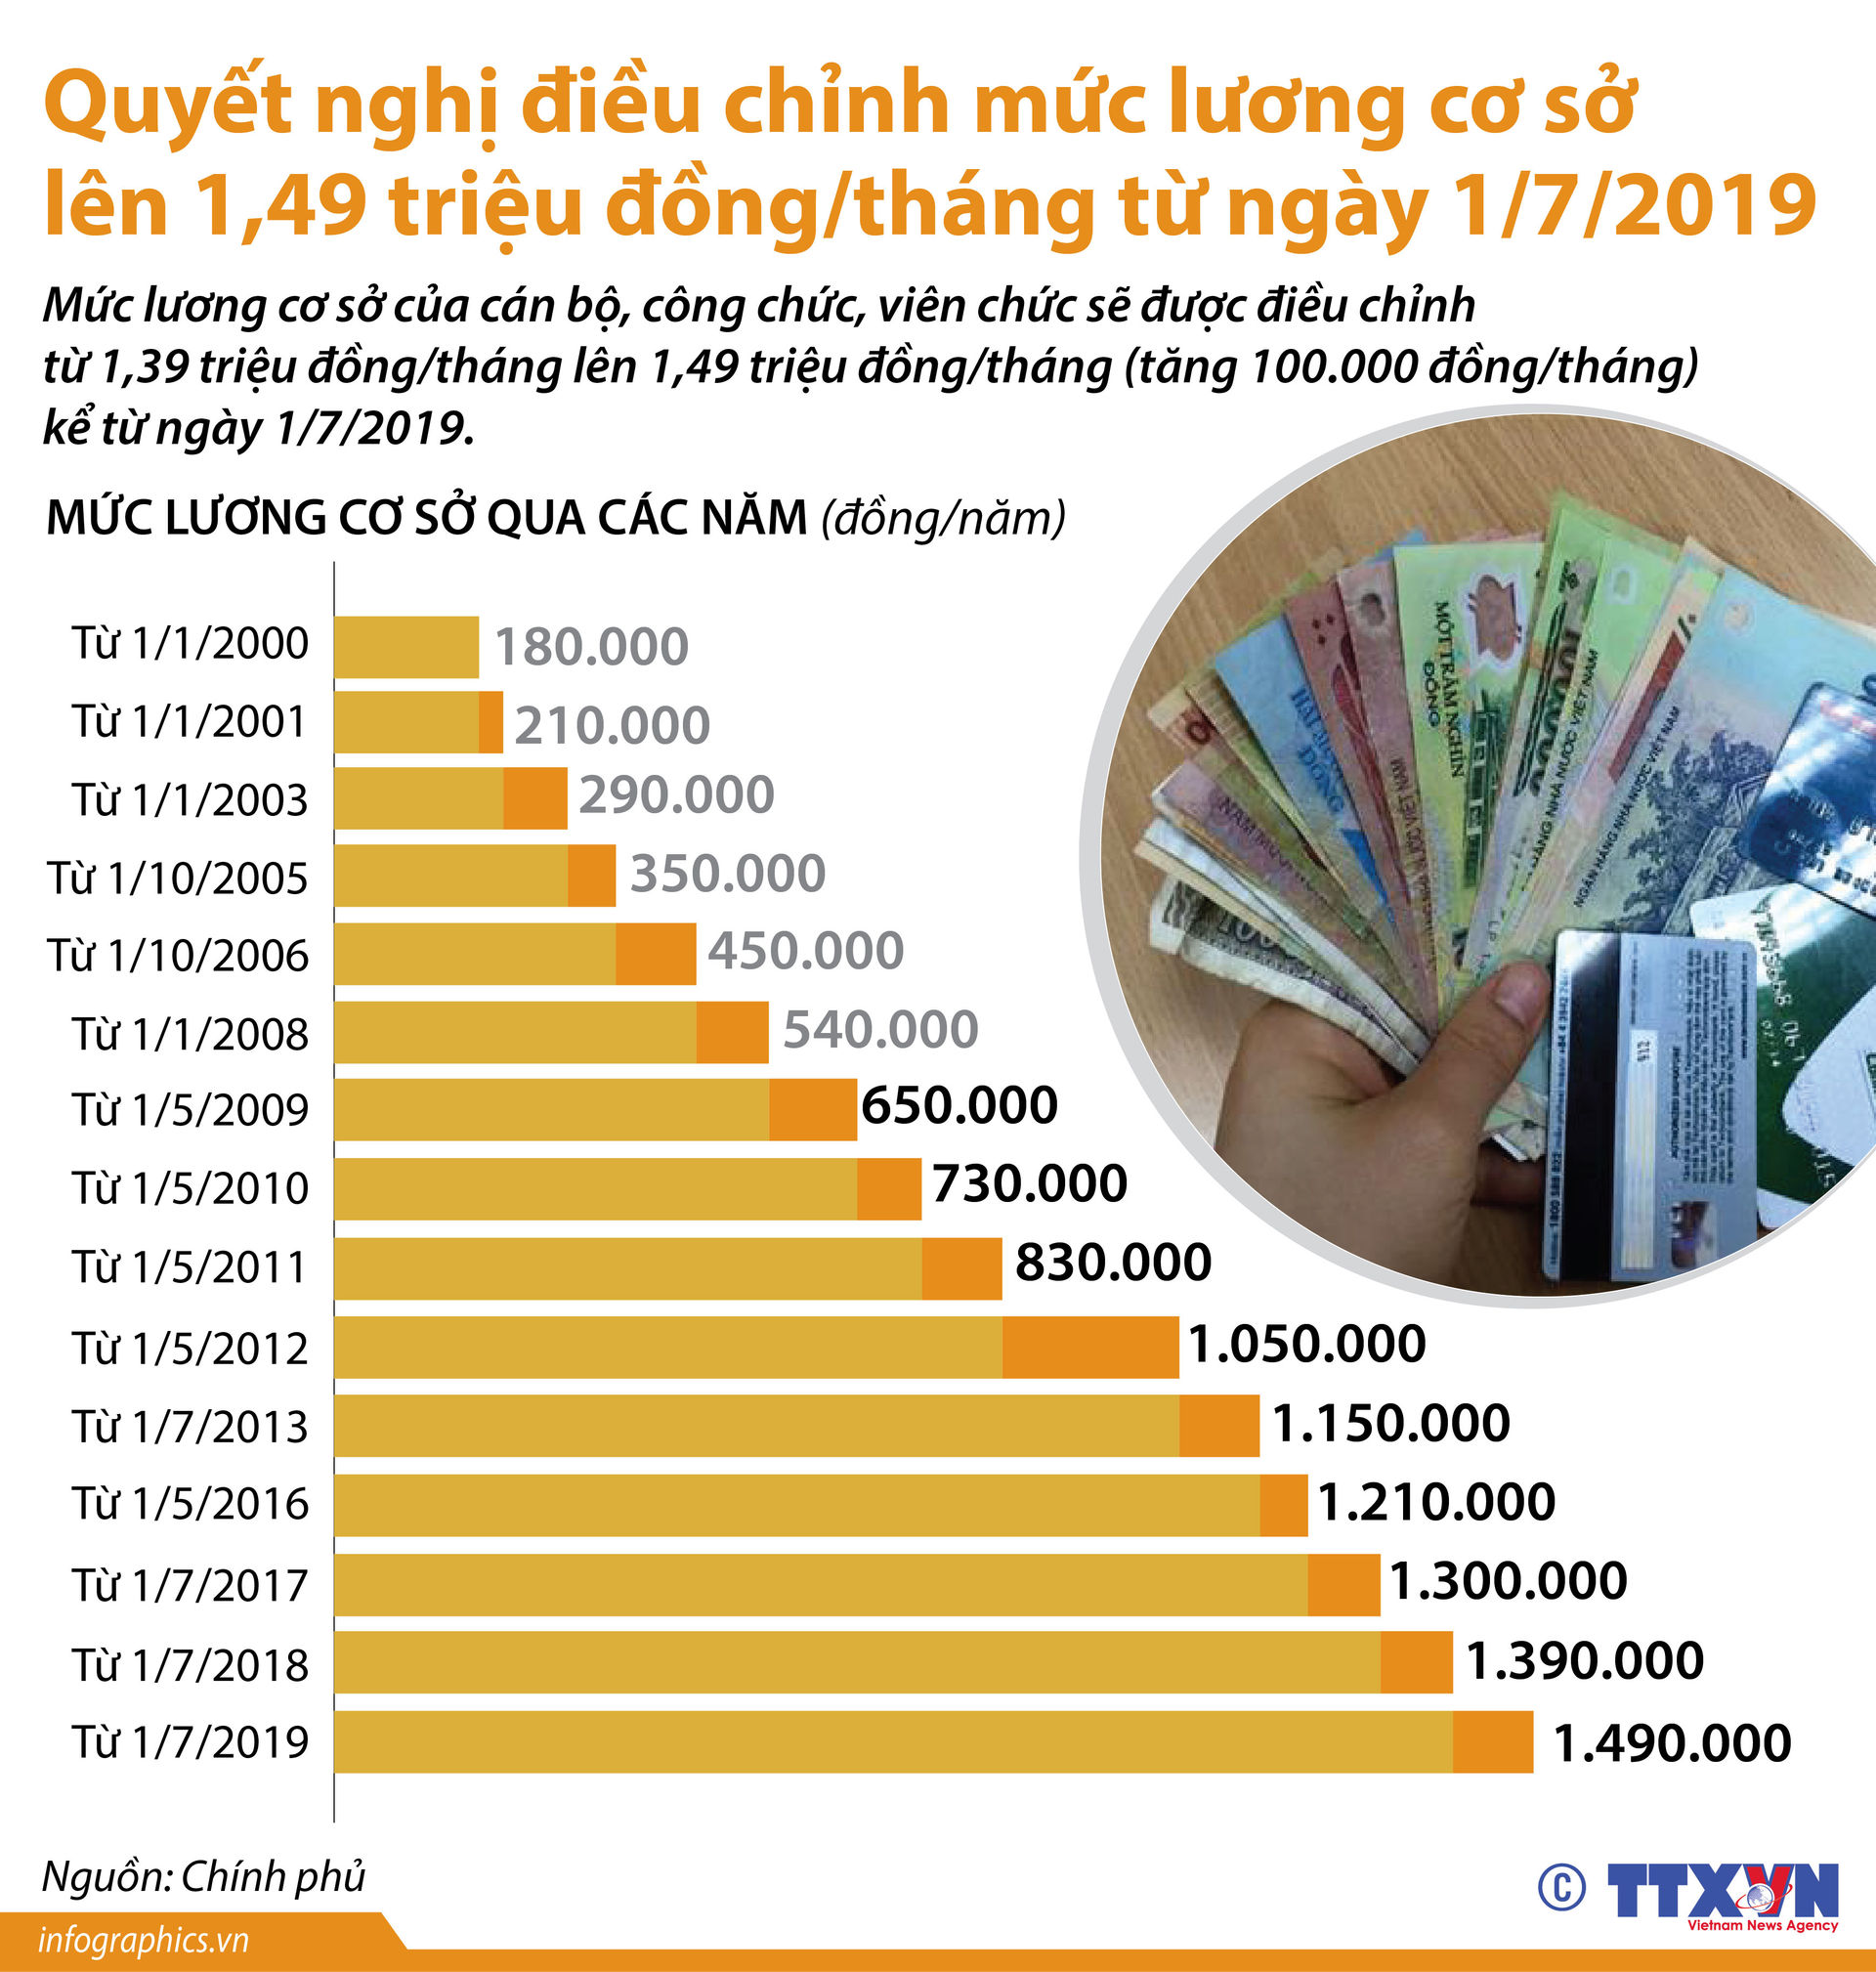 Lương cơ sở của cán bộ, công chức, viên chức tăng 100.000 đồng/tháng từ ngày 1/7/2019  